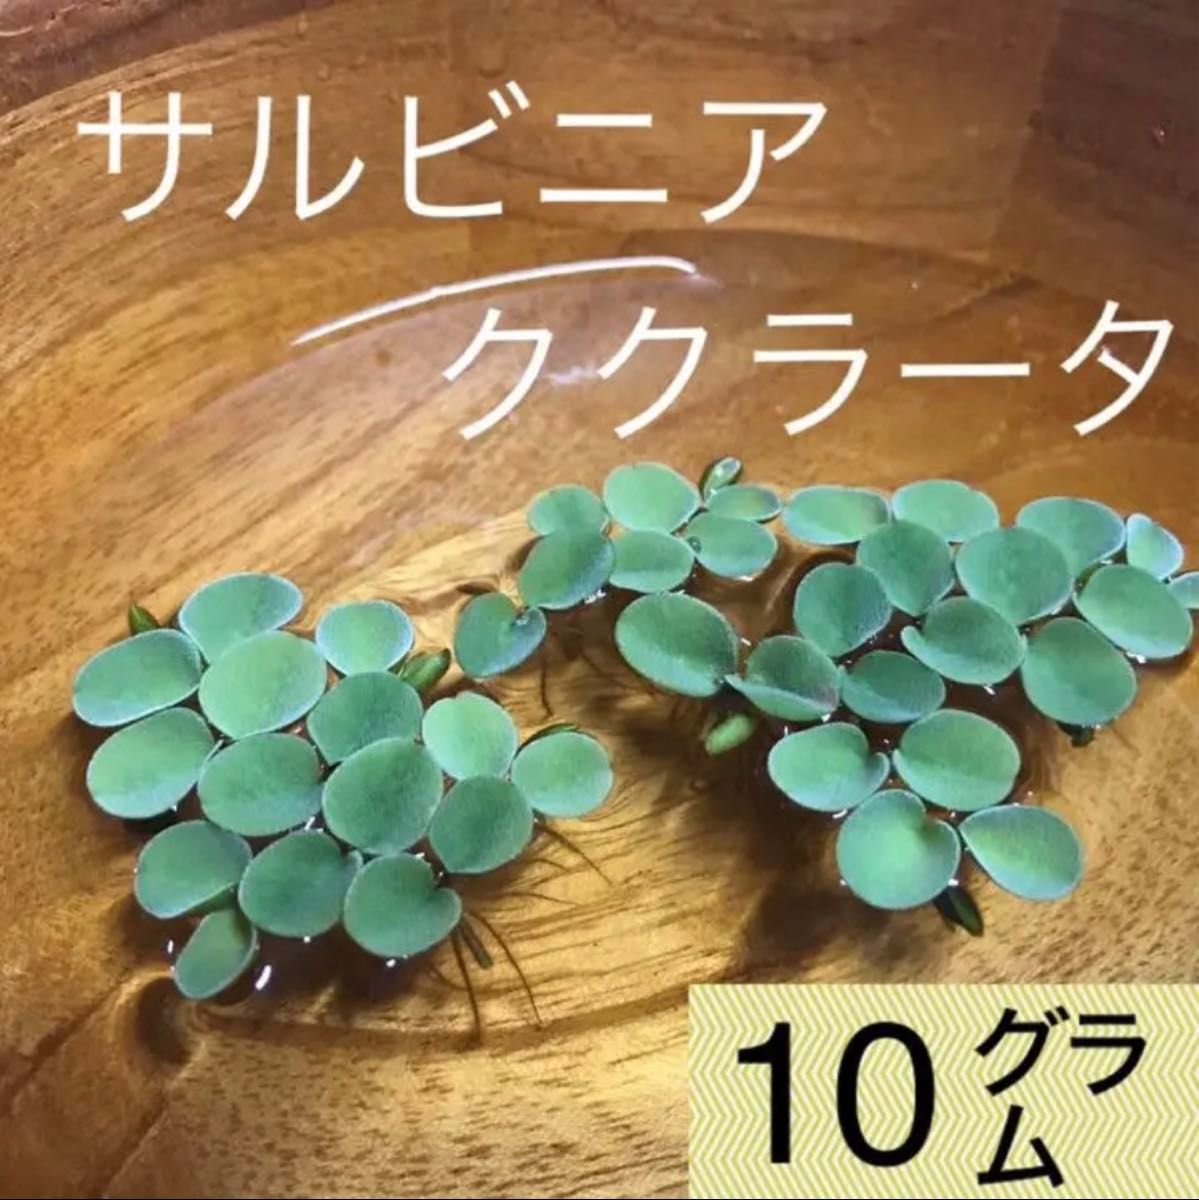 【無農薬】ビオトープ水草3種セット